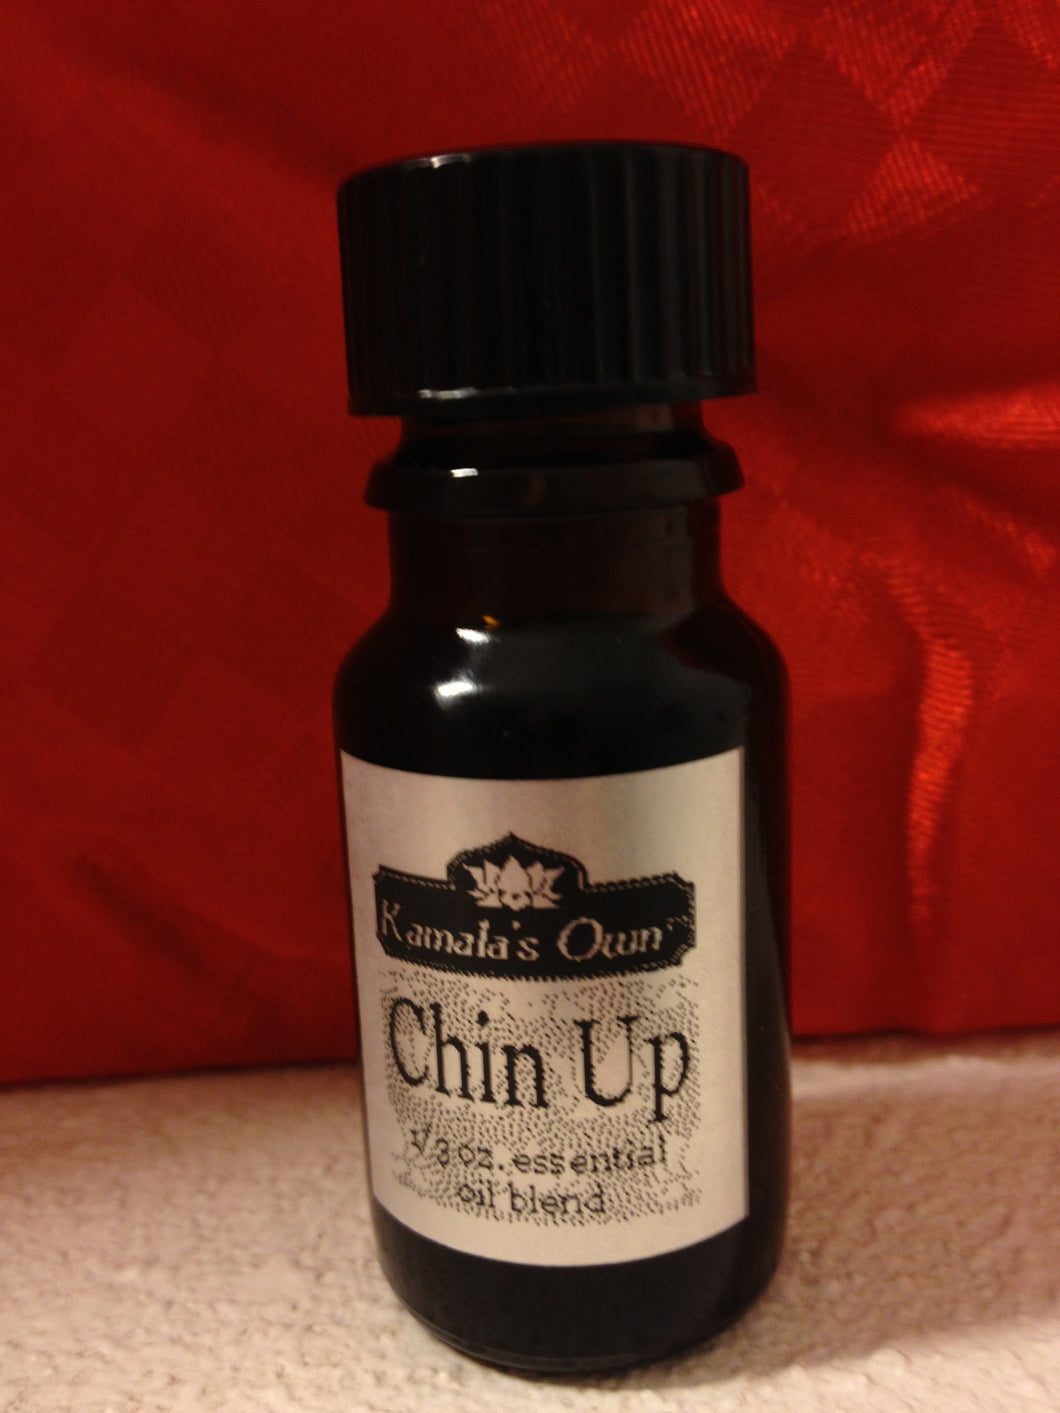 Chin Up aromatherapy blend